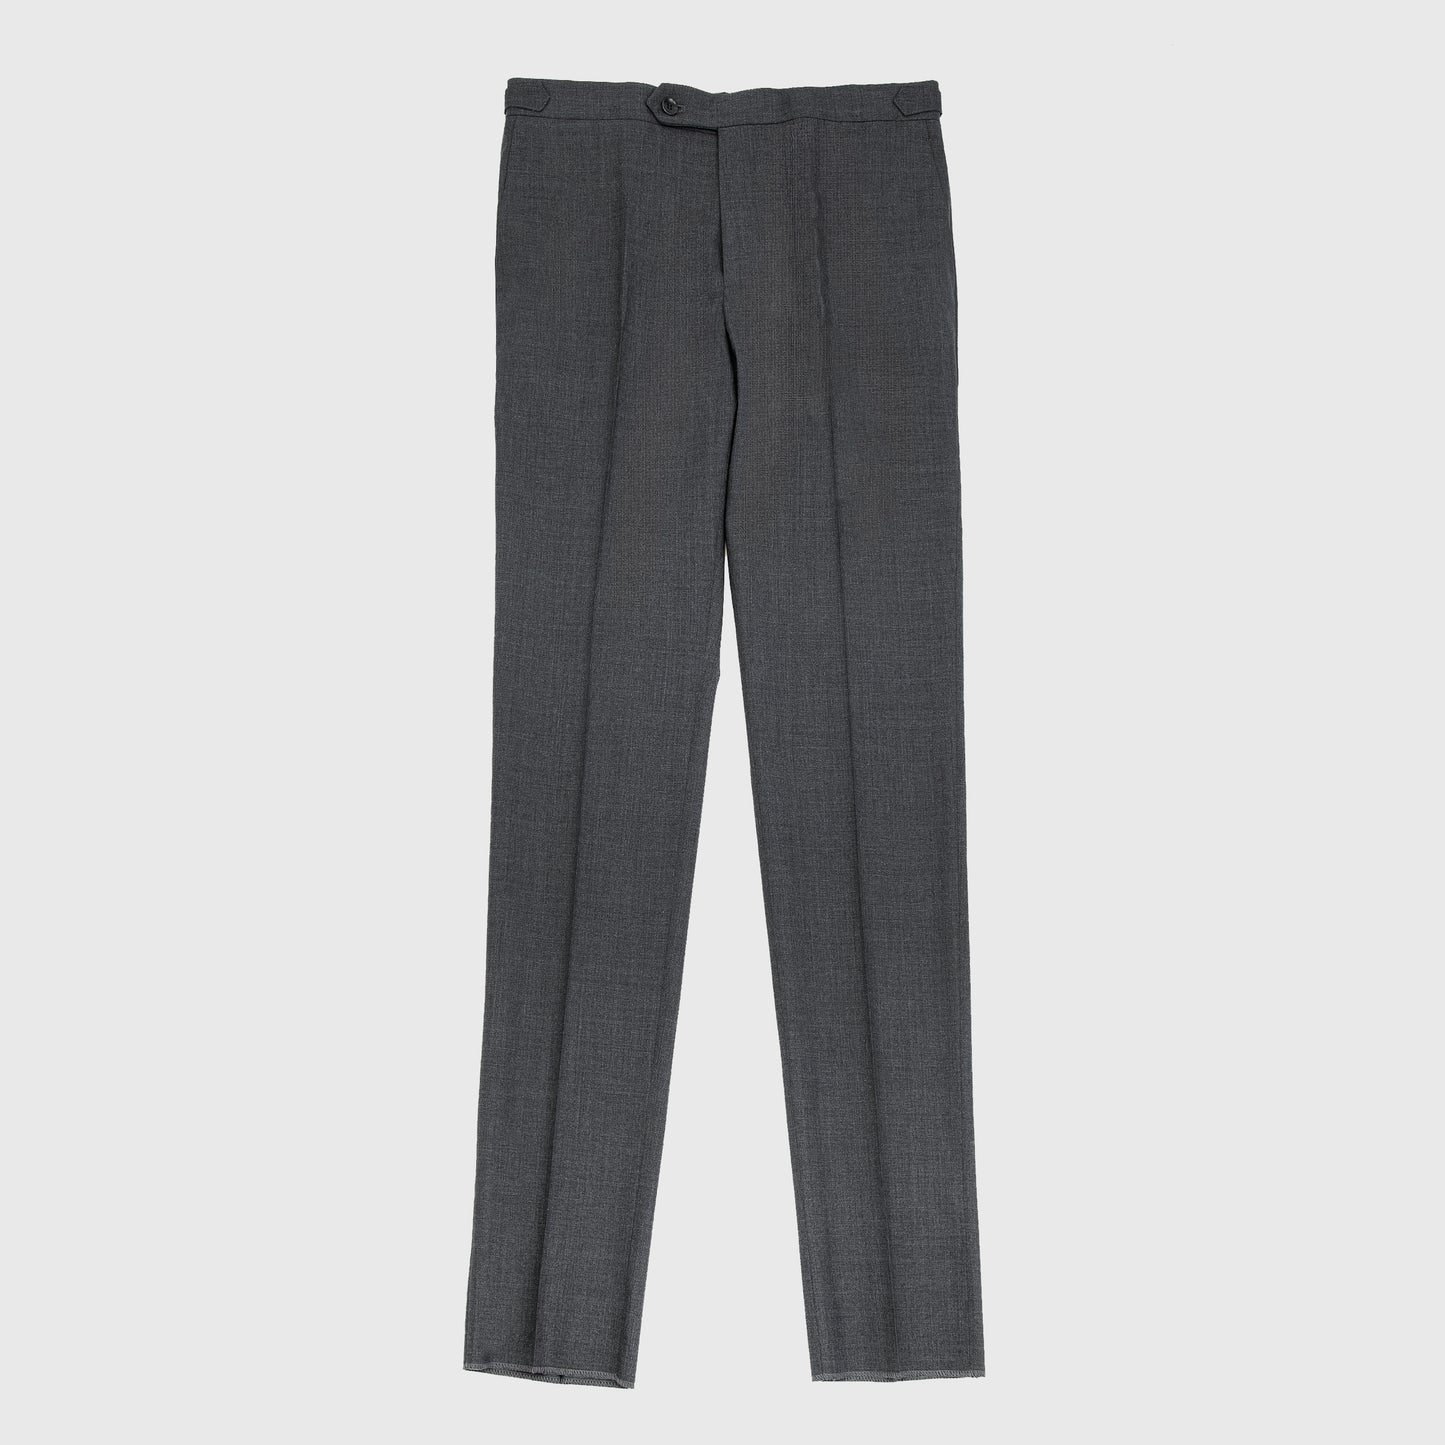 Medium Rise Slim Fit 120´s Wool Trouser with Side Adjusters - Dark Grey Melange